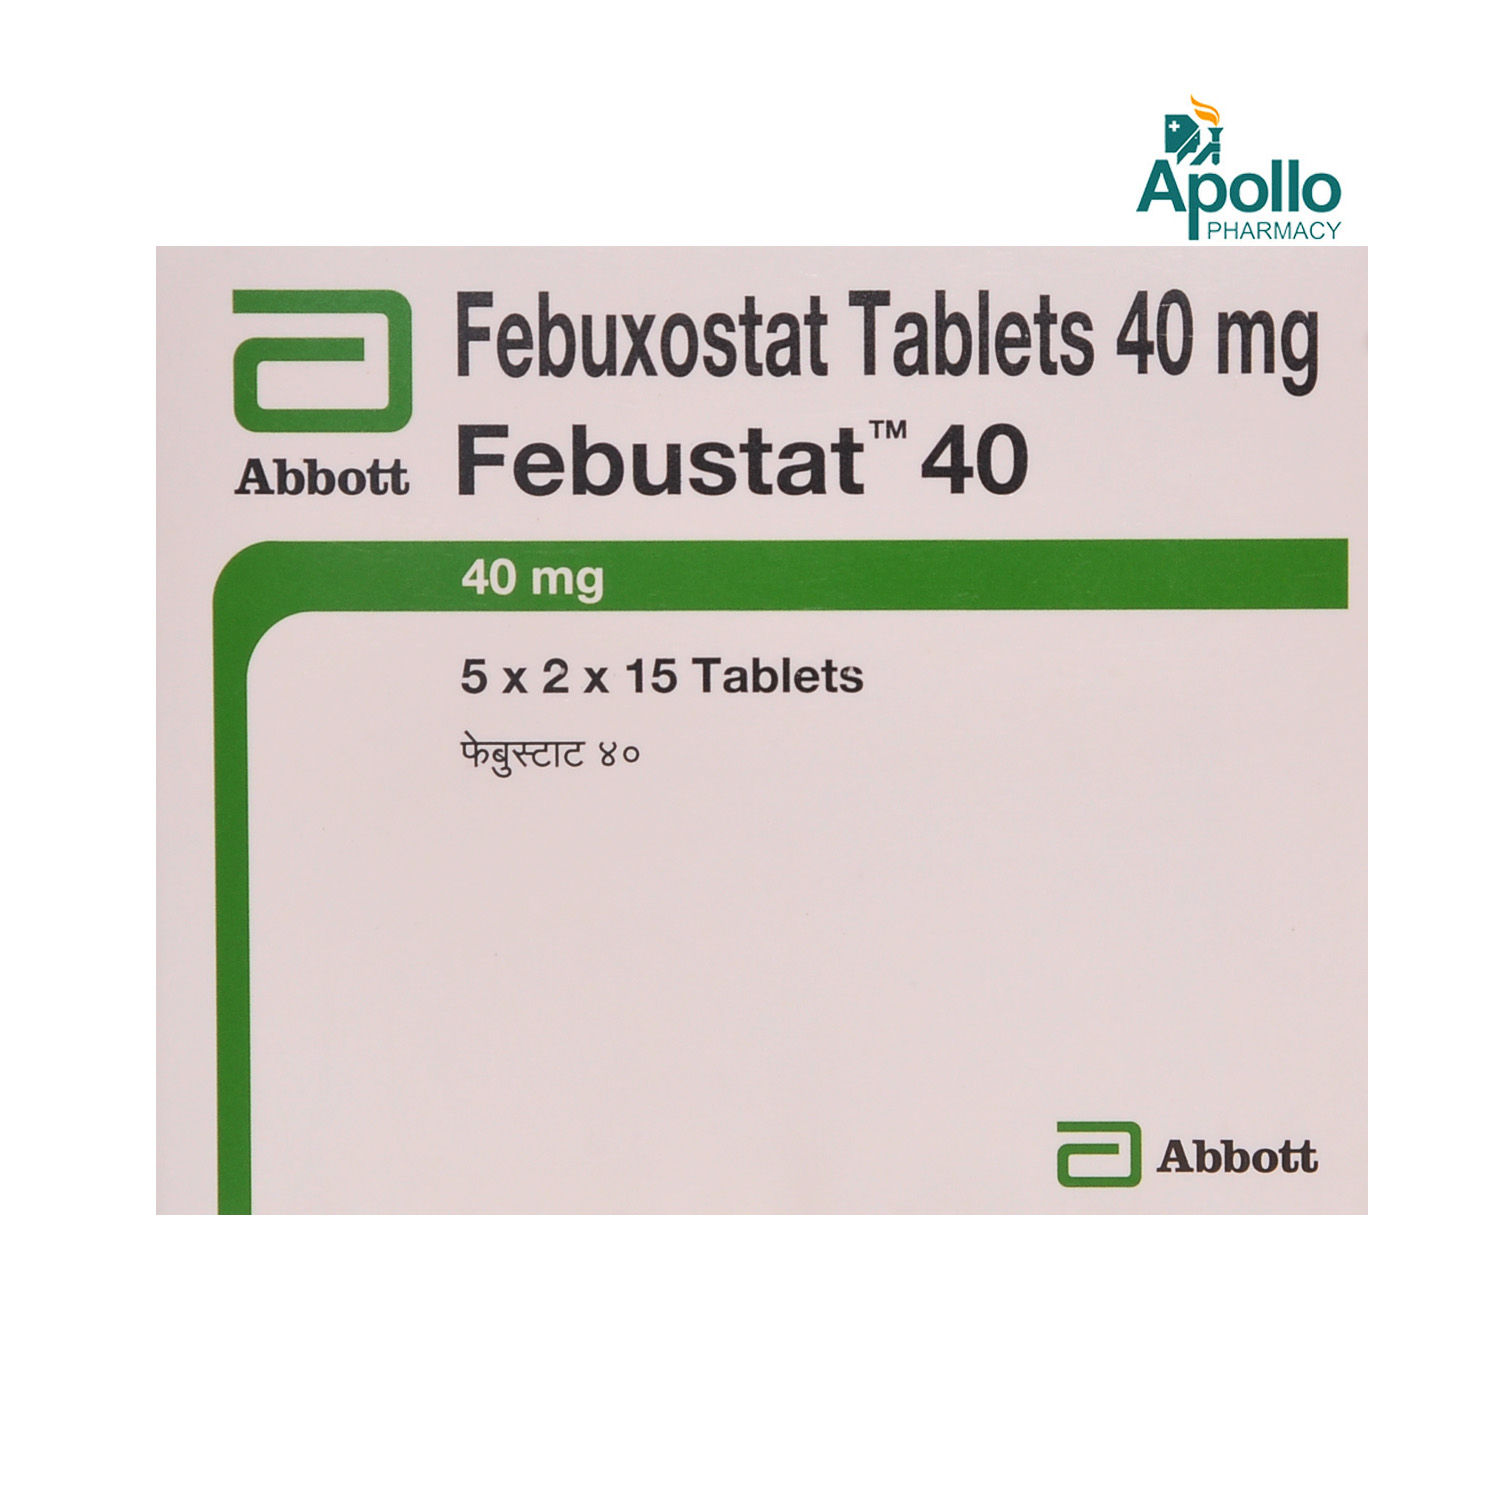 Febustat 40 Tablet 15's, Pack of 15 TABLETS